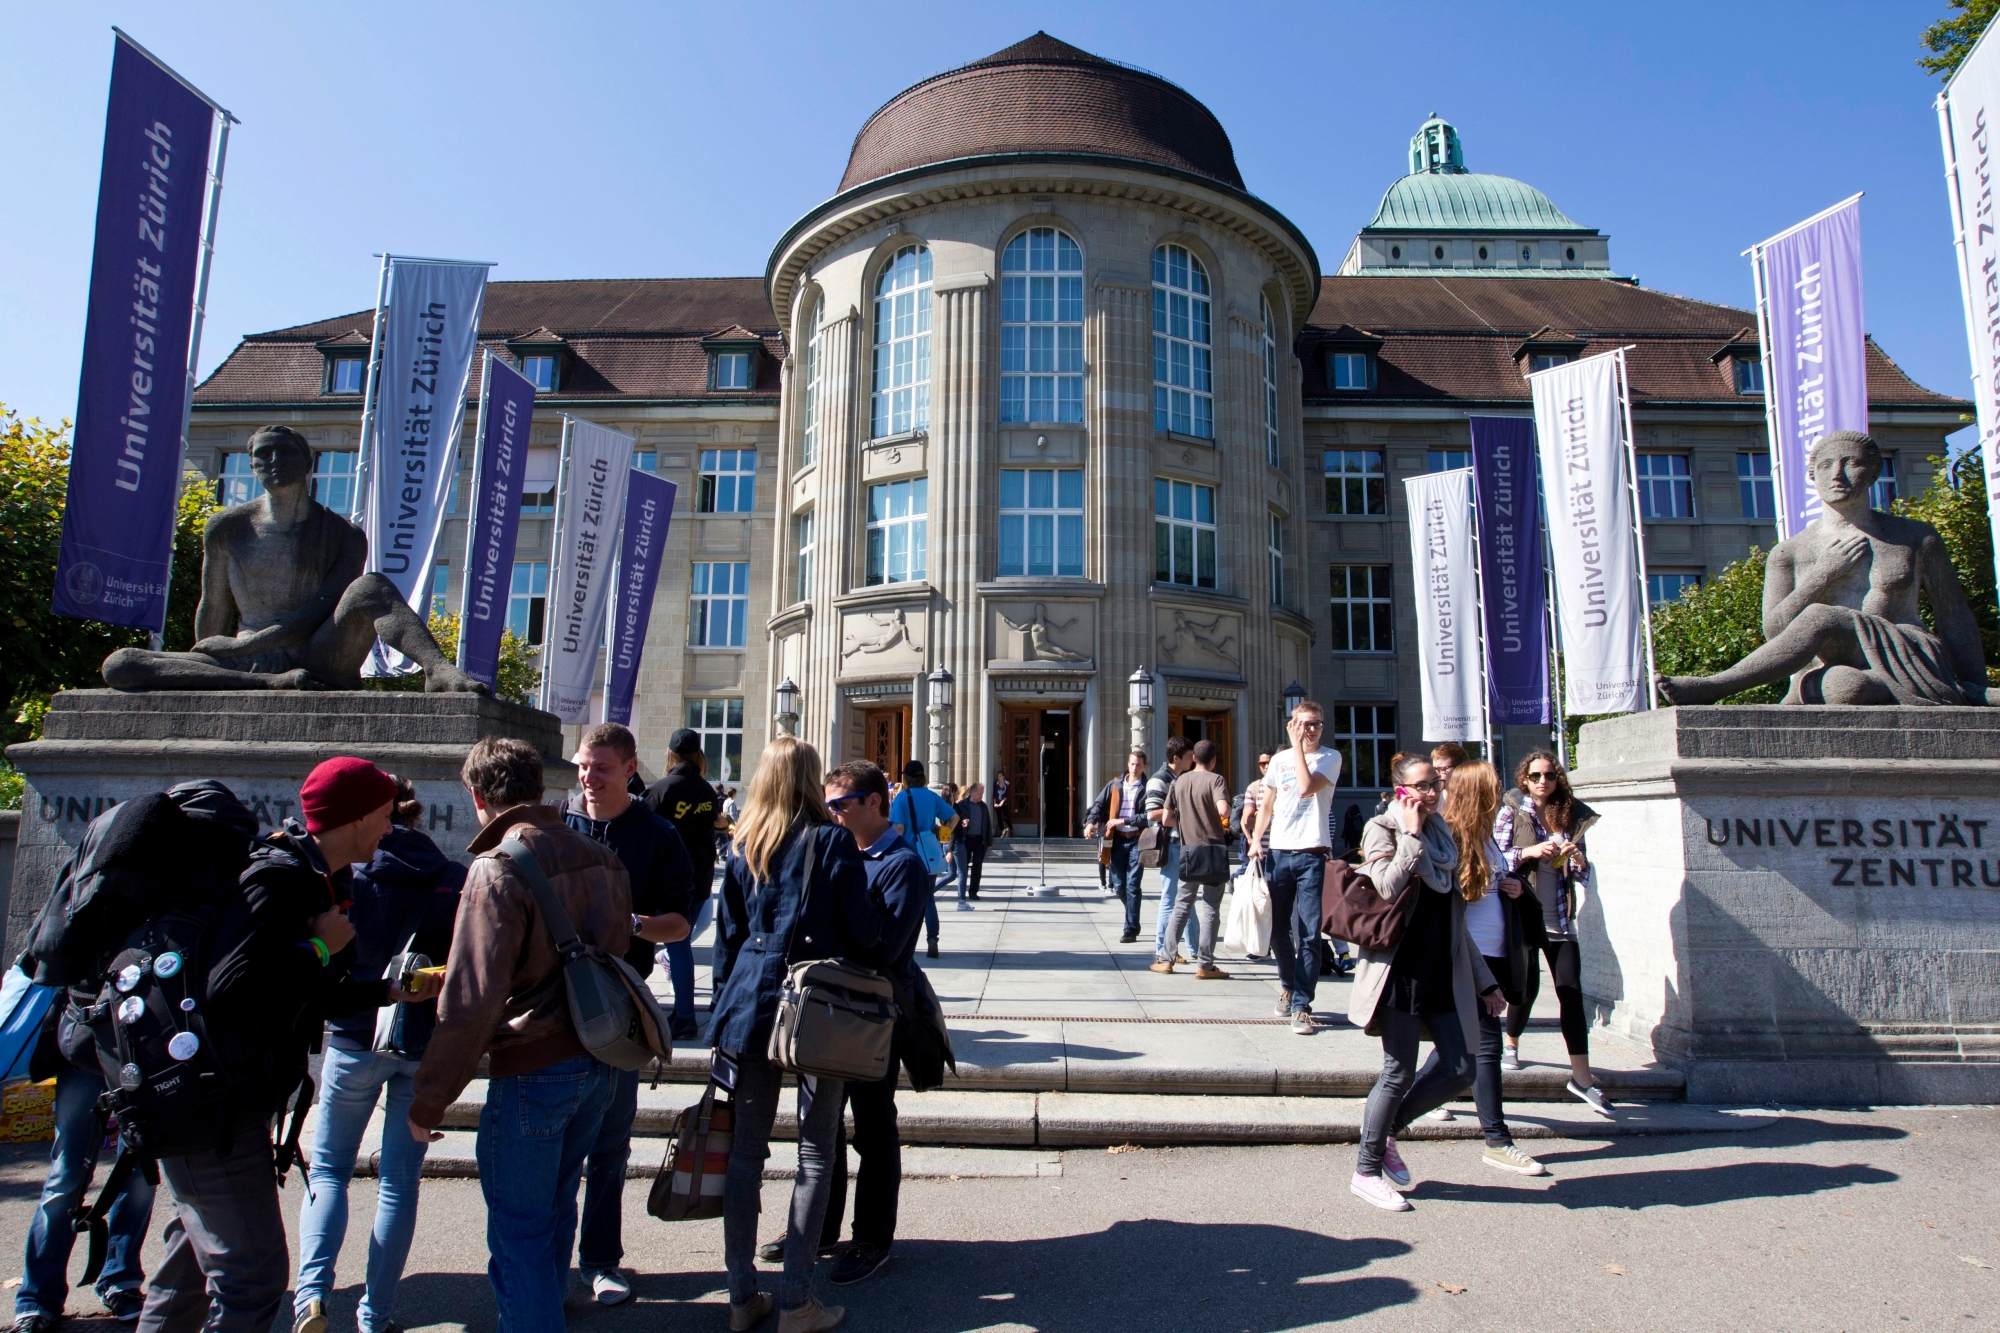 L’Université de Zurich serre la vis contre les étudiants qui dépassent les bornes.